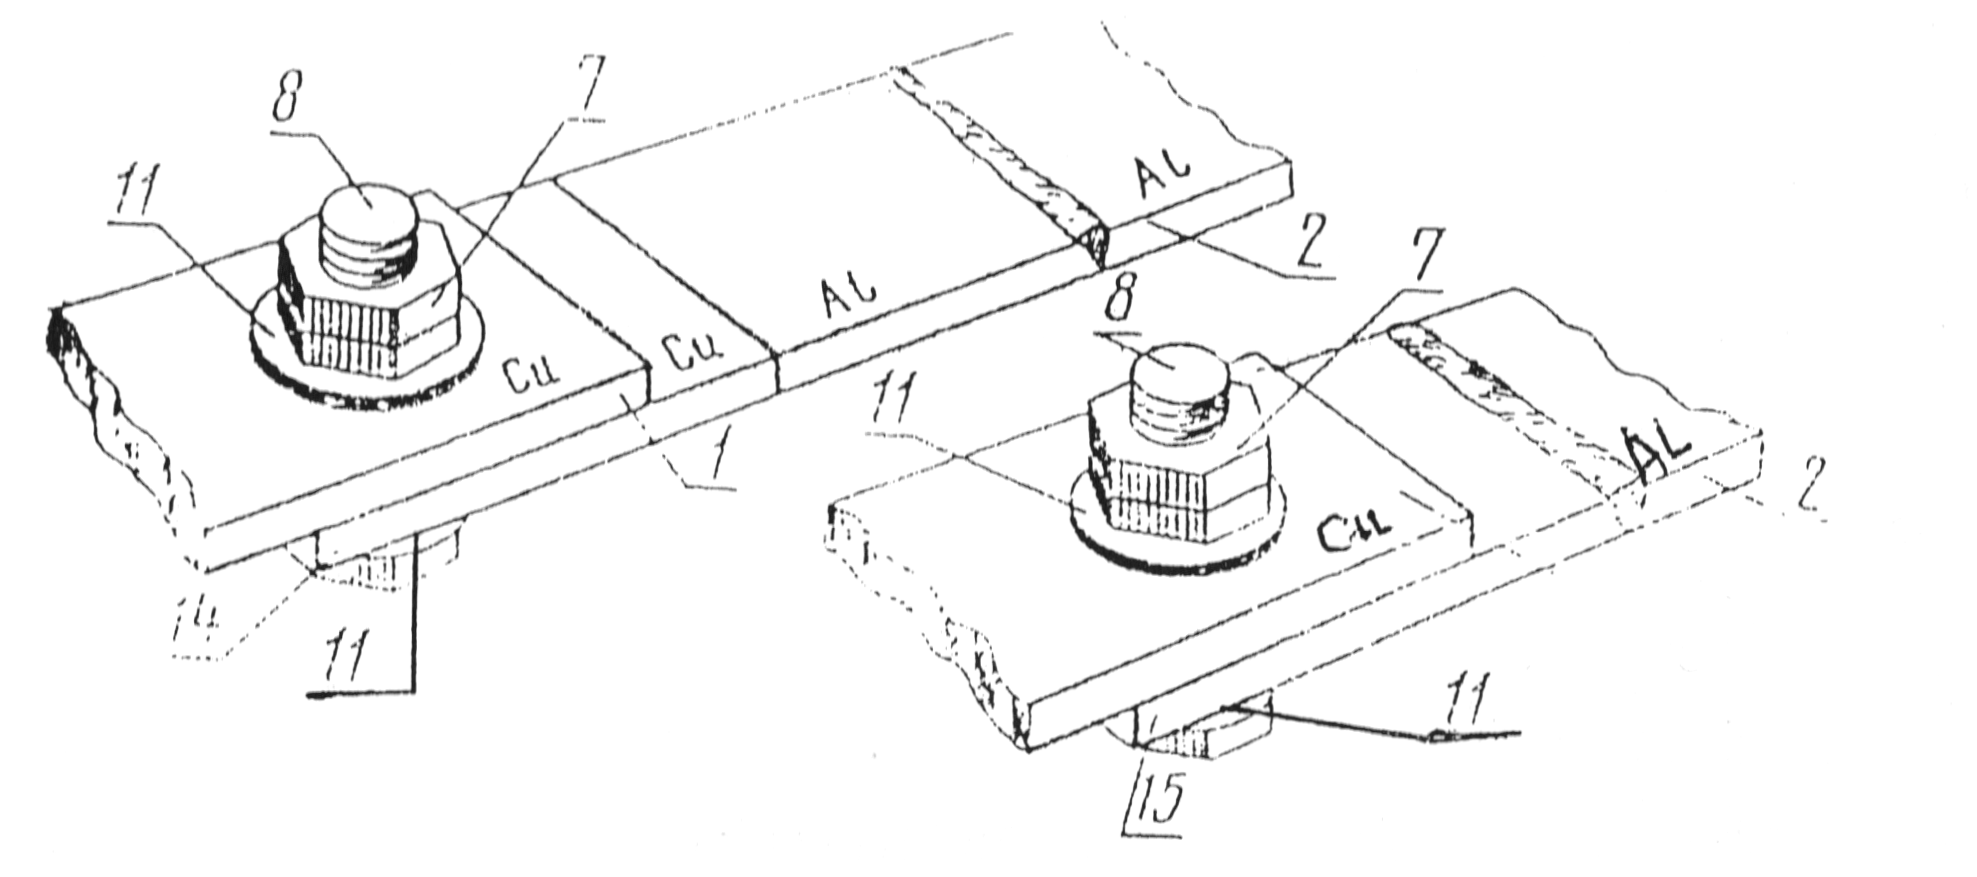 Разборные соединения проводников с плоскими контактными поверхностями со средствами стабилизации - Соединение через медно-алюминиевую пластину (слева) и соединение через переходную пластинку из твердого алюминиевого сплава (справа)